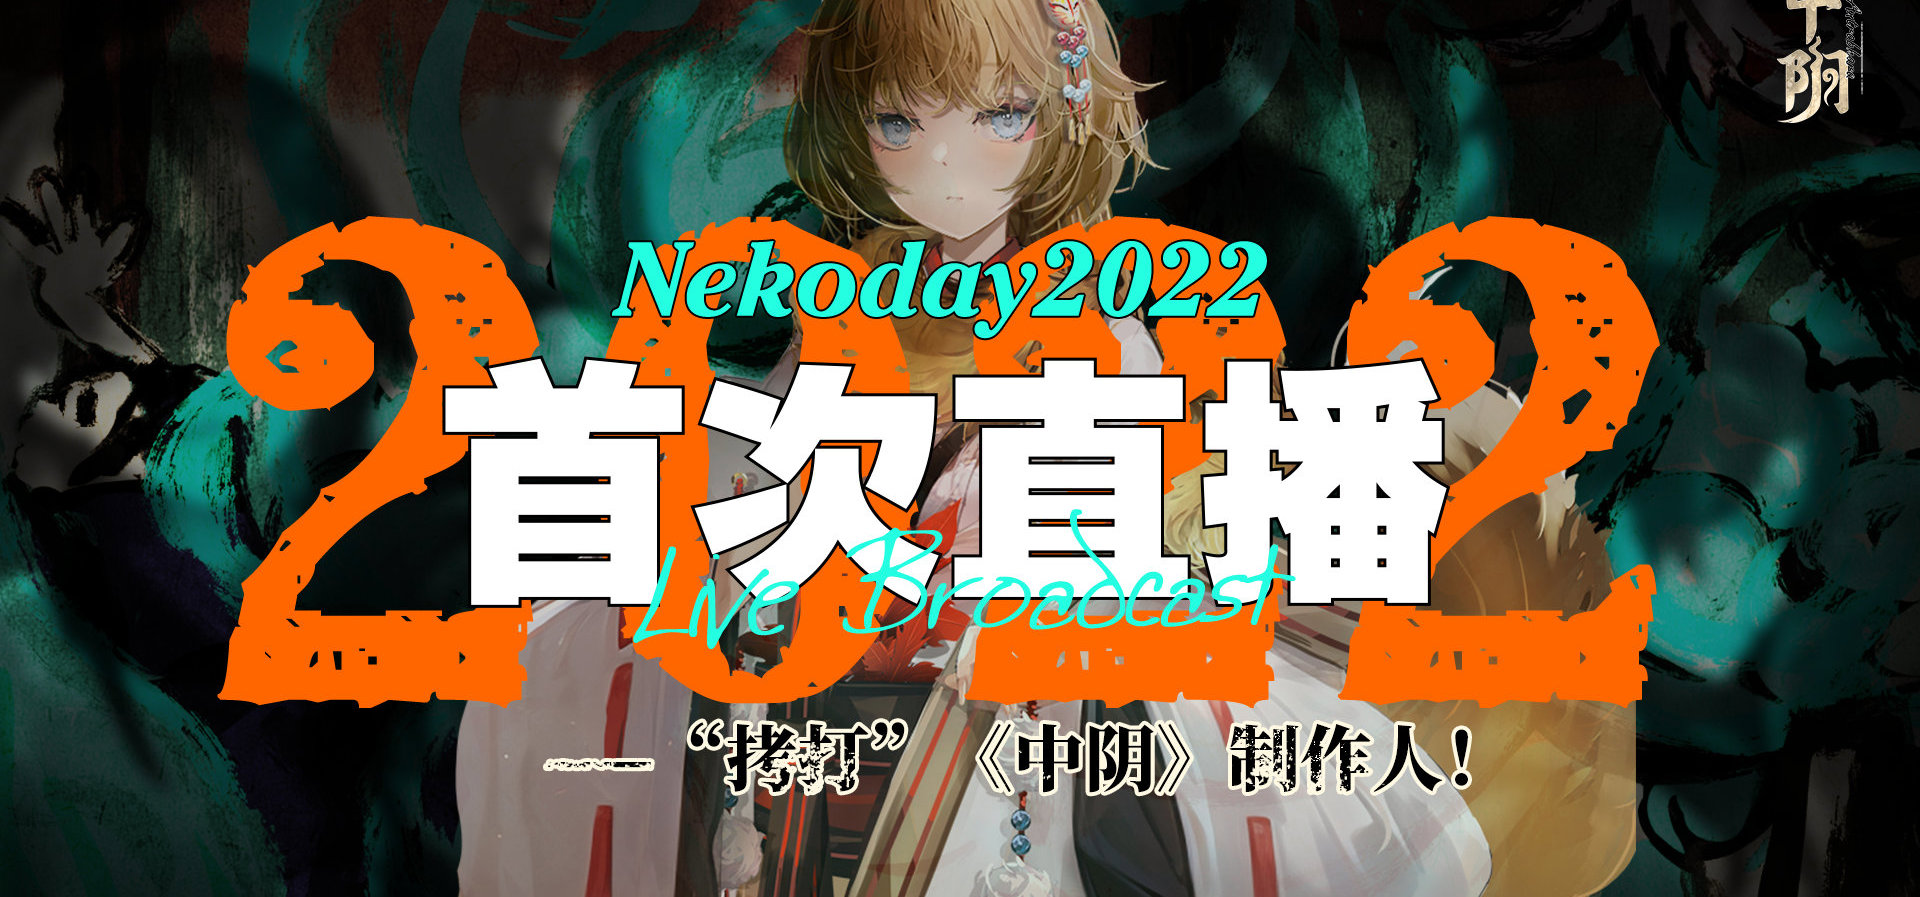 Nekoday2022年首次直播——“拷打”《中阴》制作人！